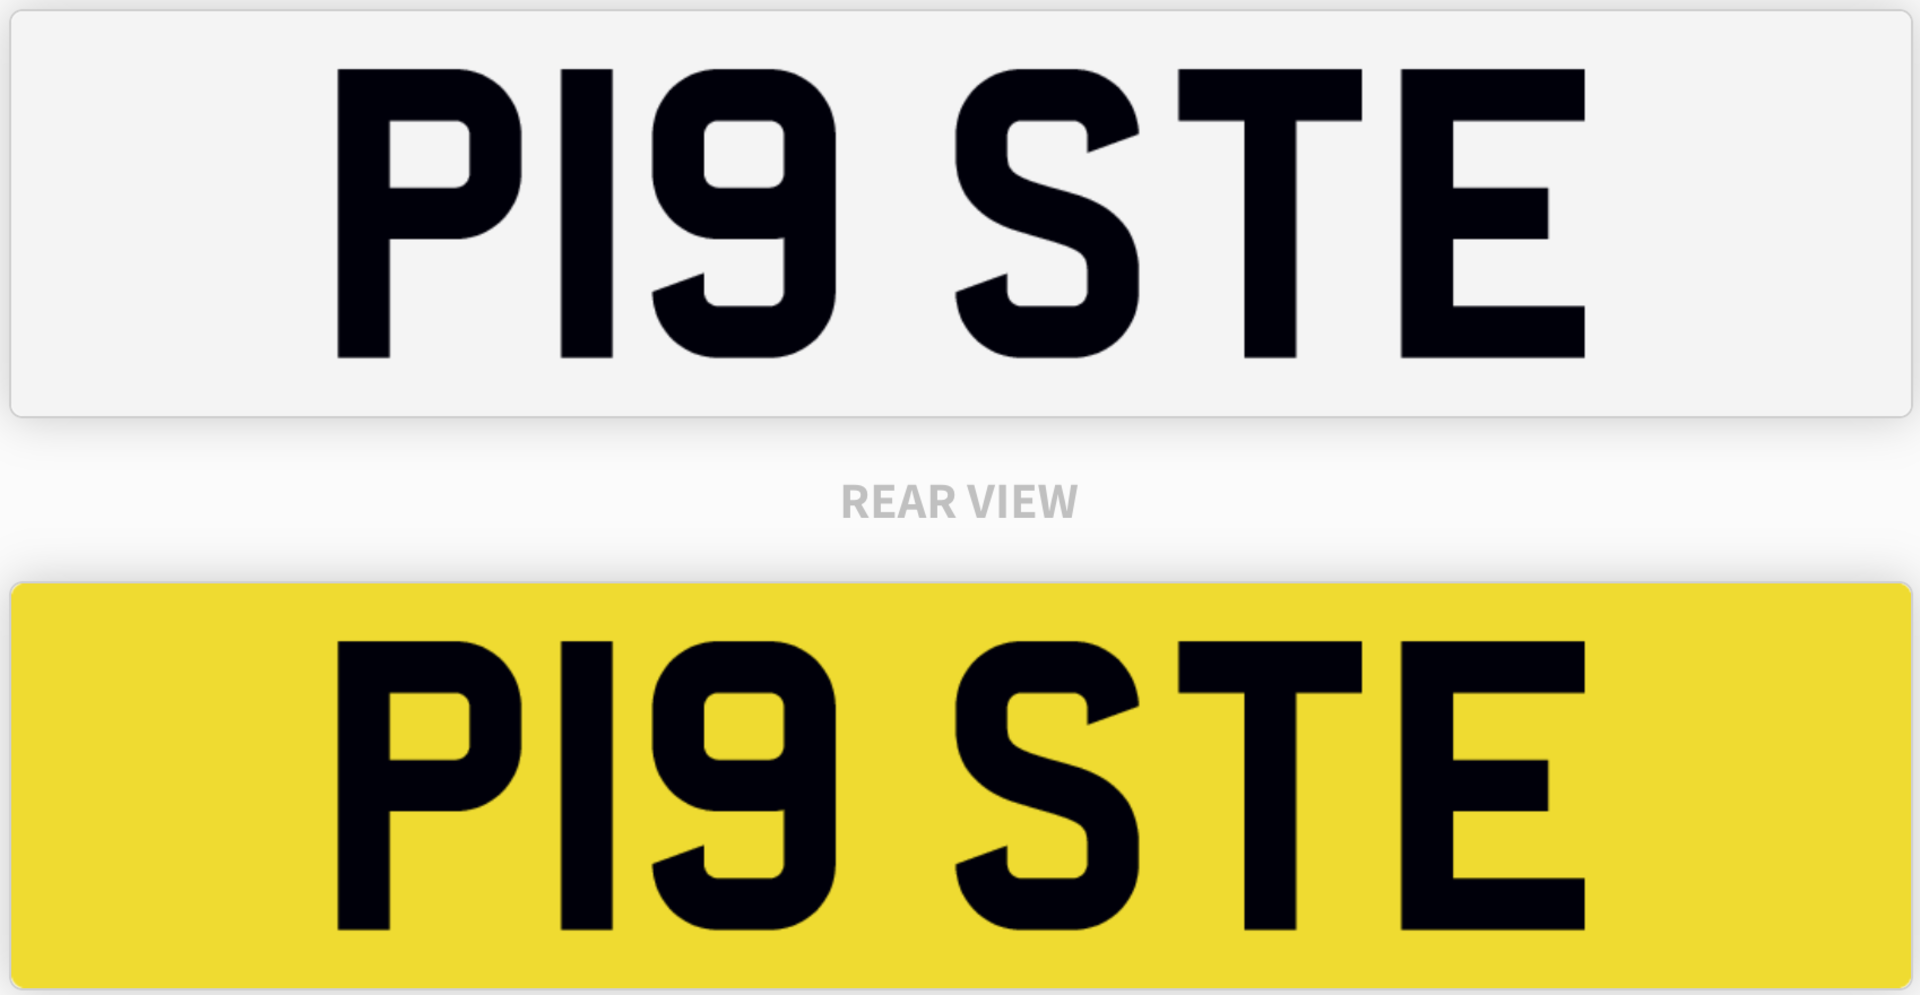 P19 STE number plate/car registration